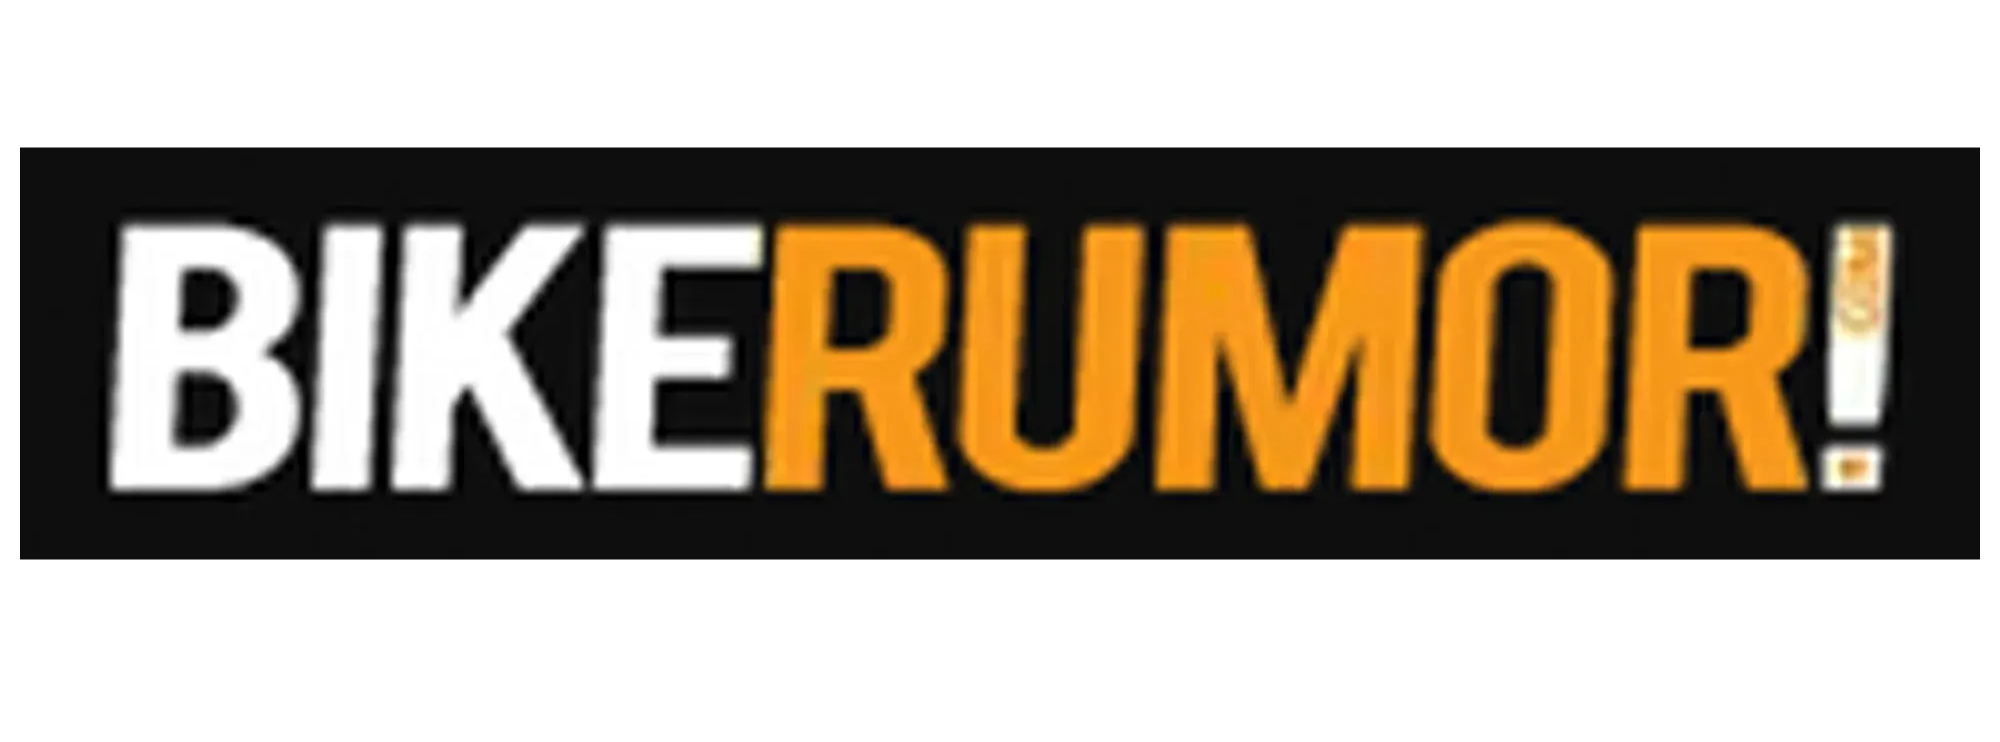 bike rumour logo